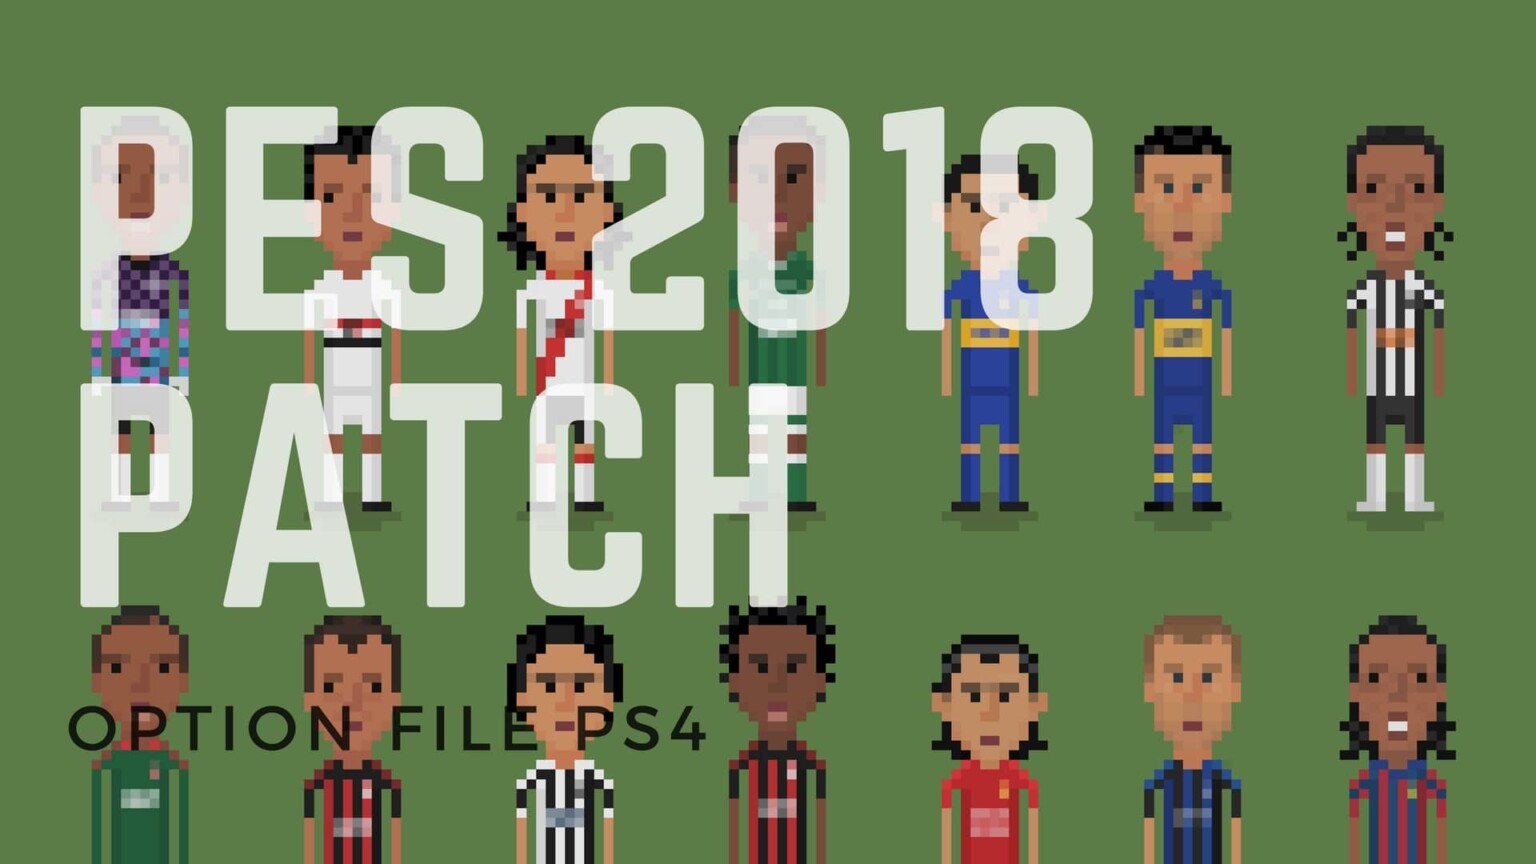 PES-2018-Bundesliga-Patch-PS4-1